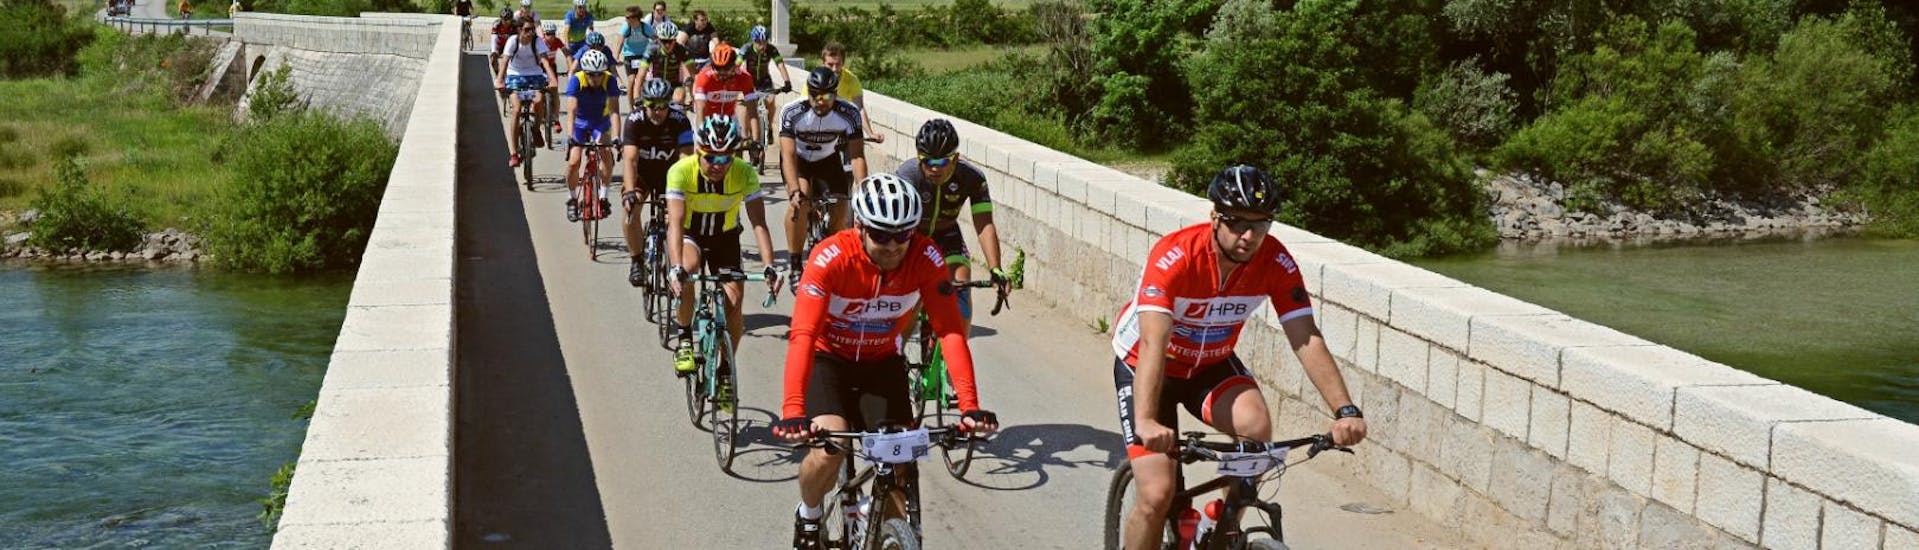 Durante il tour in bicicletta con partenza da Split, organizzato dall'Hotel Alkar, un gruppo di ciclisti sta pedalando in Dalmazia.